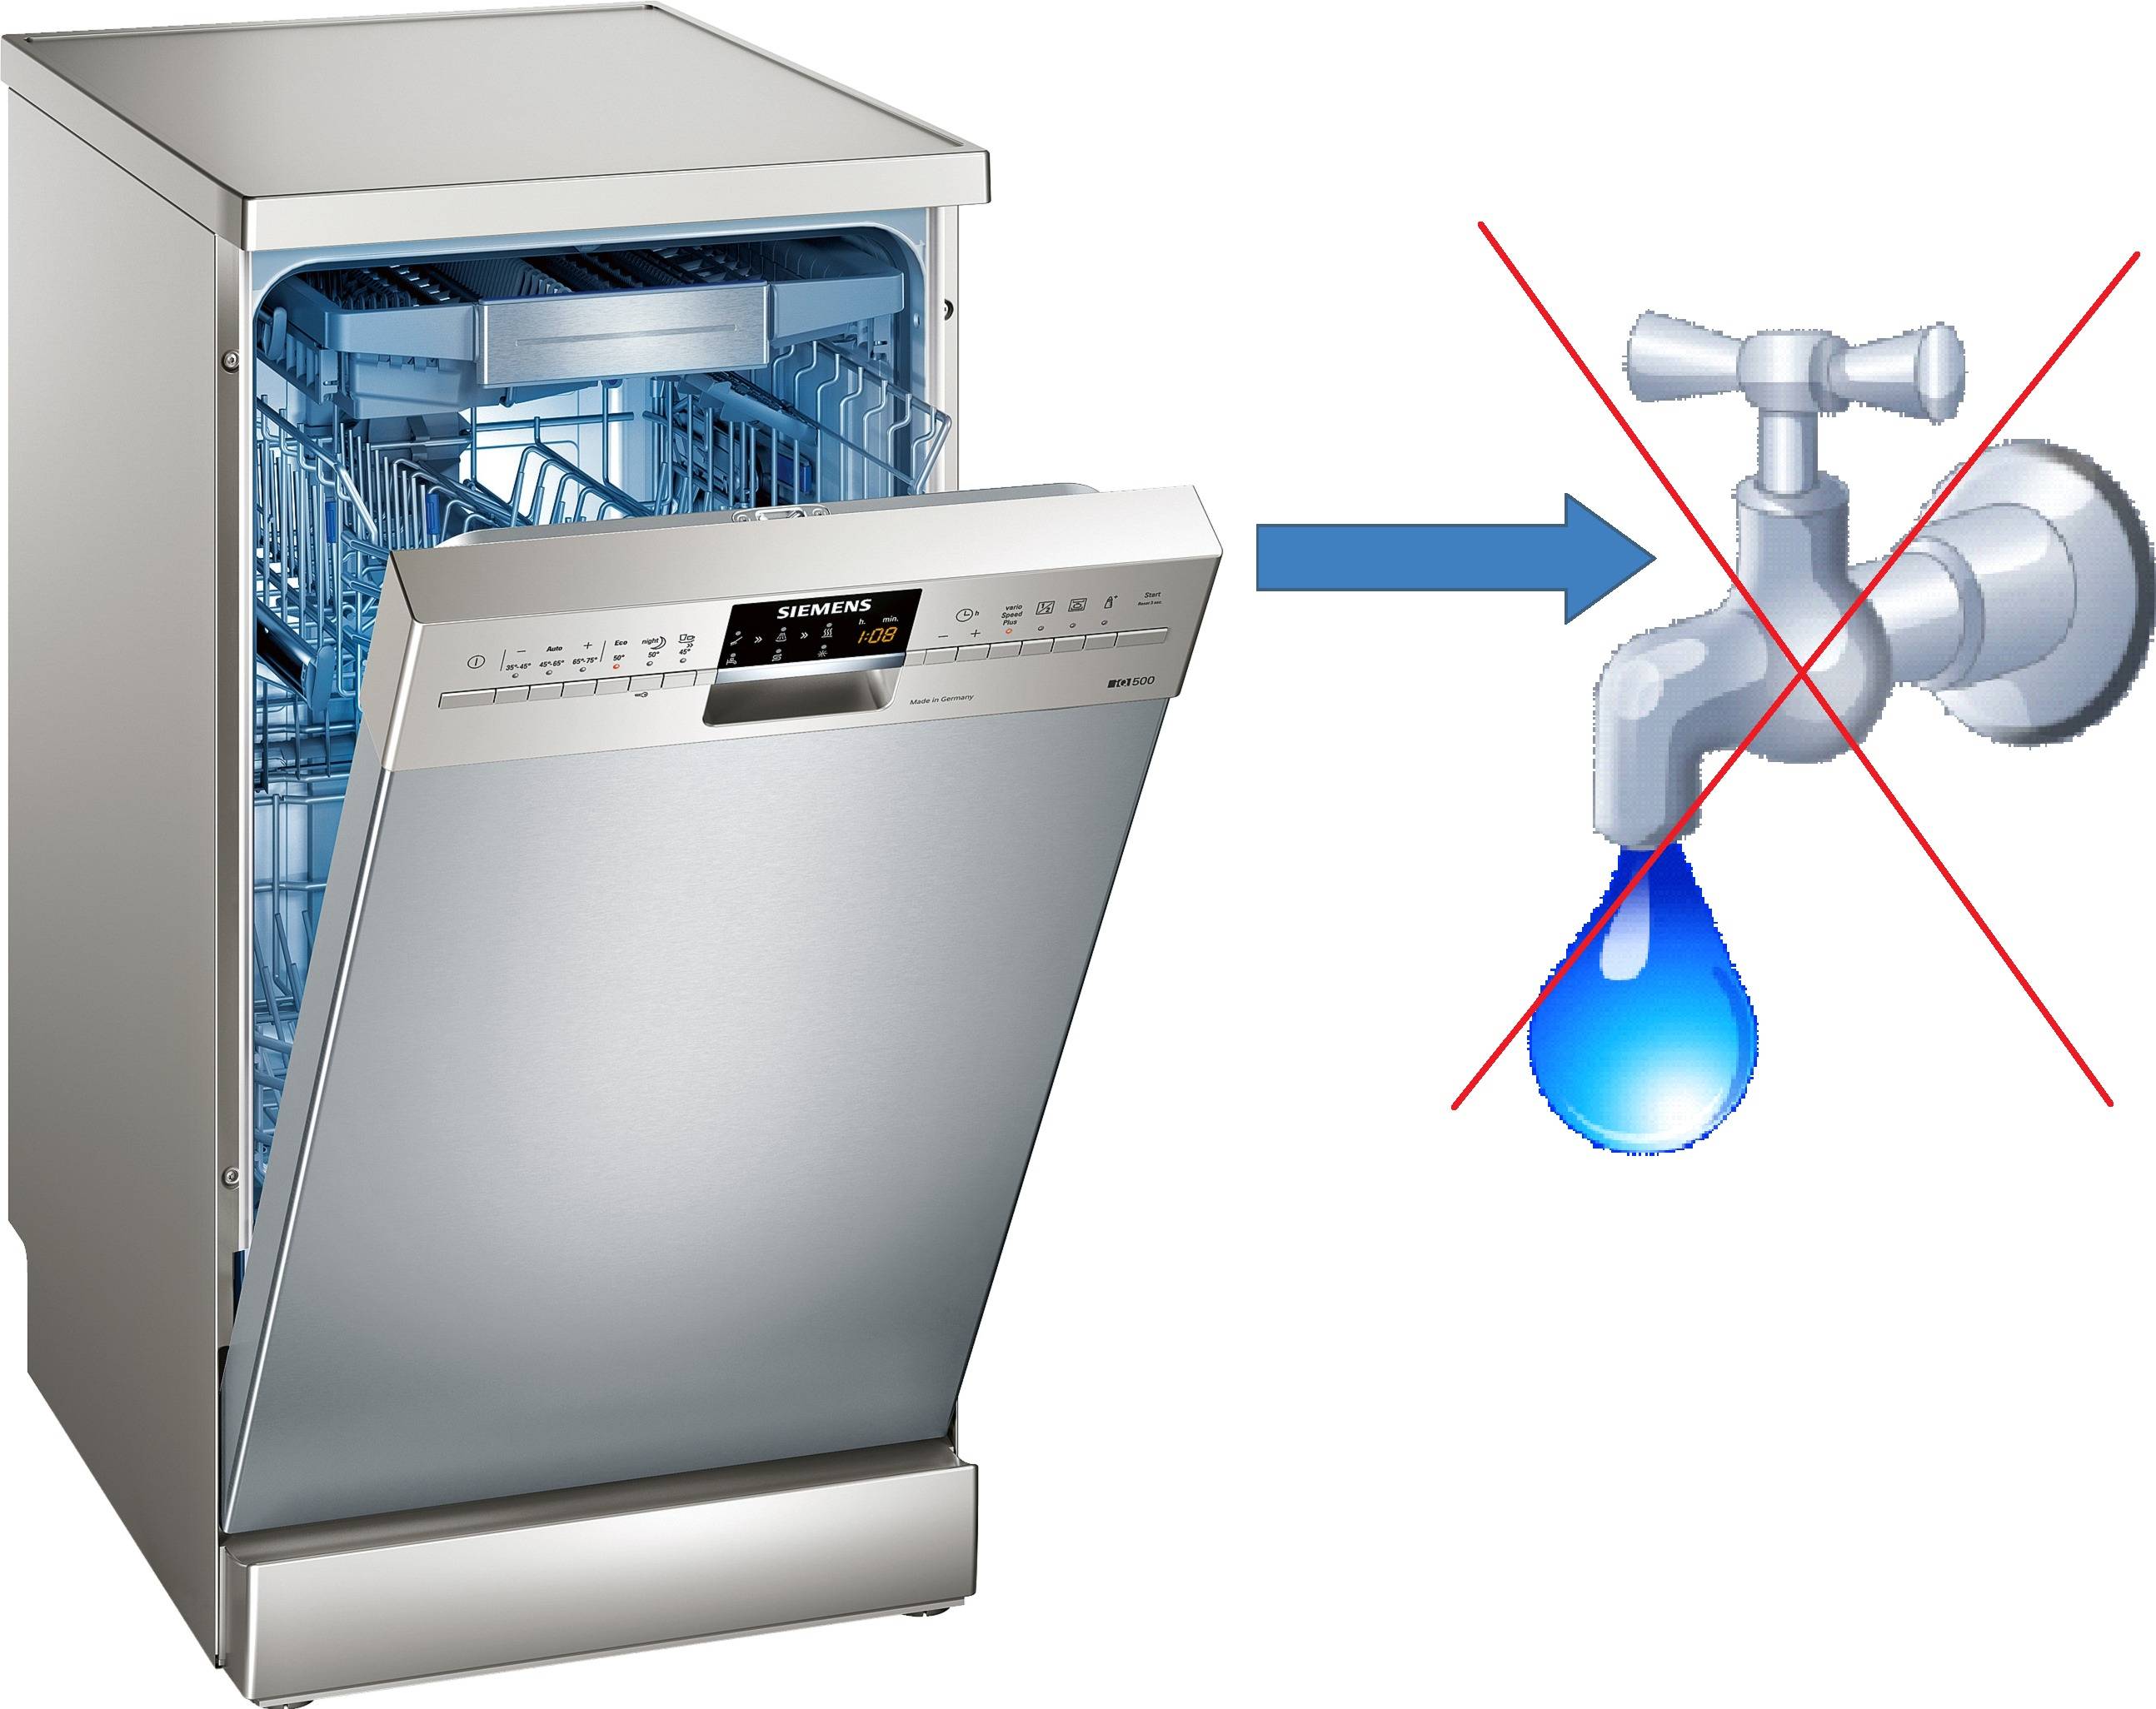 Посудомоечная машина жесткая вода. E15 Siemens посудомойка. Посудомойка Леран без водопровода. Gorenje посудомоечная машина с баком для воды. ПММ BDW 4106 D.